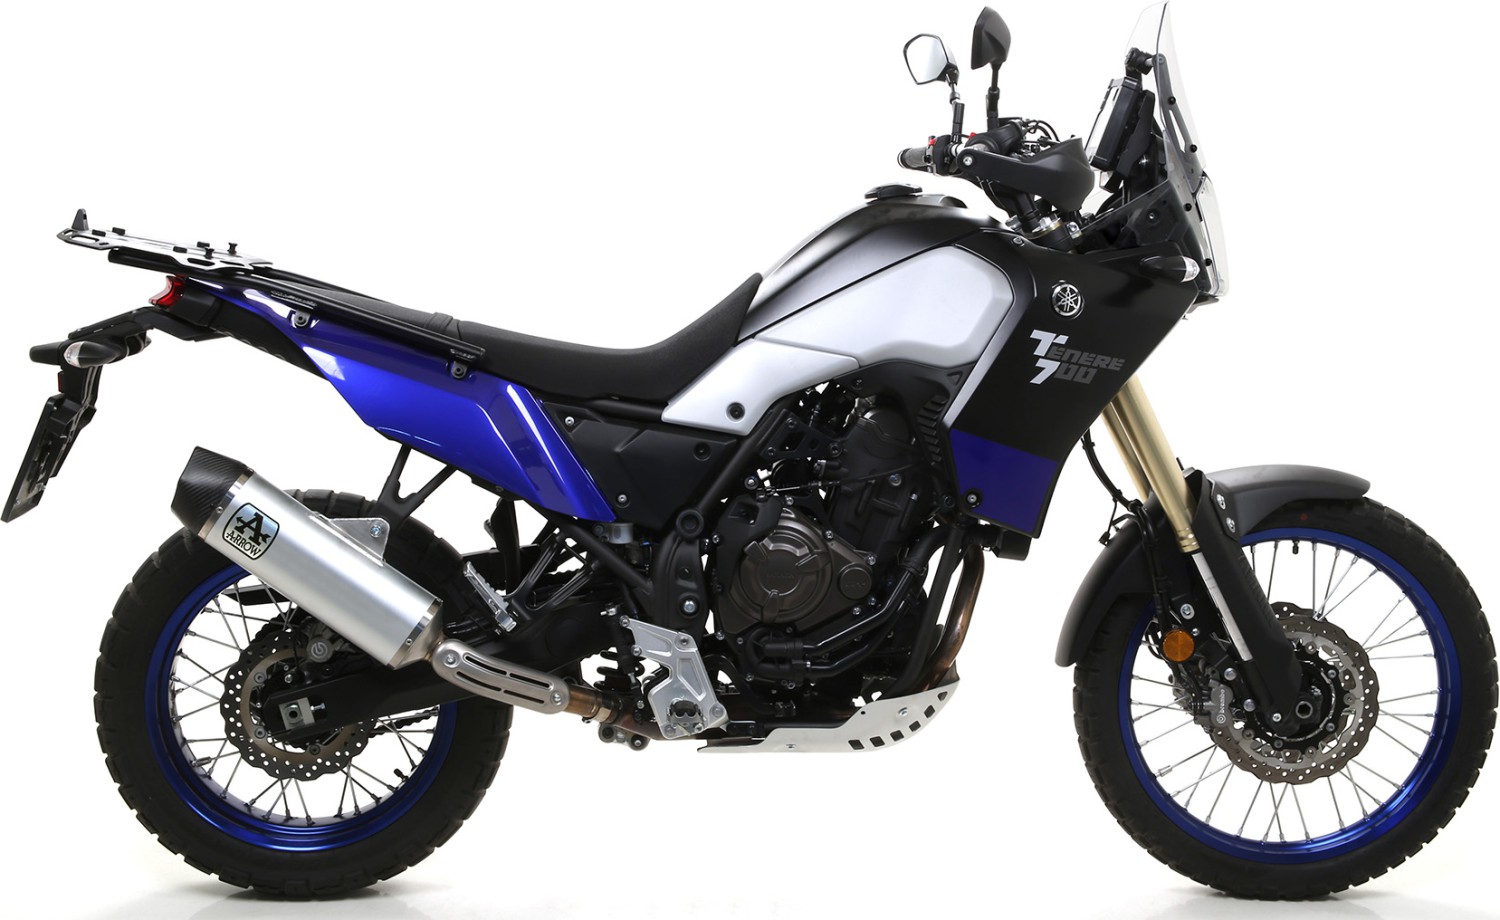  Yamaha Teneré 700, Bj. 2019-2020 